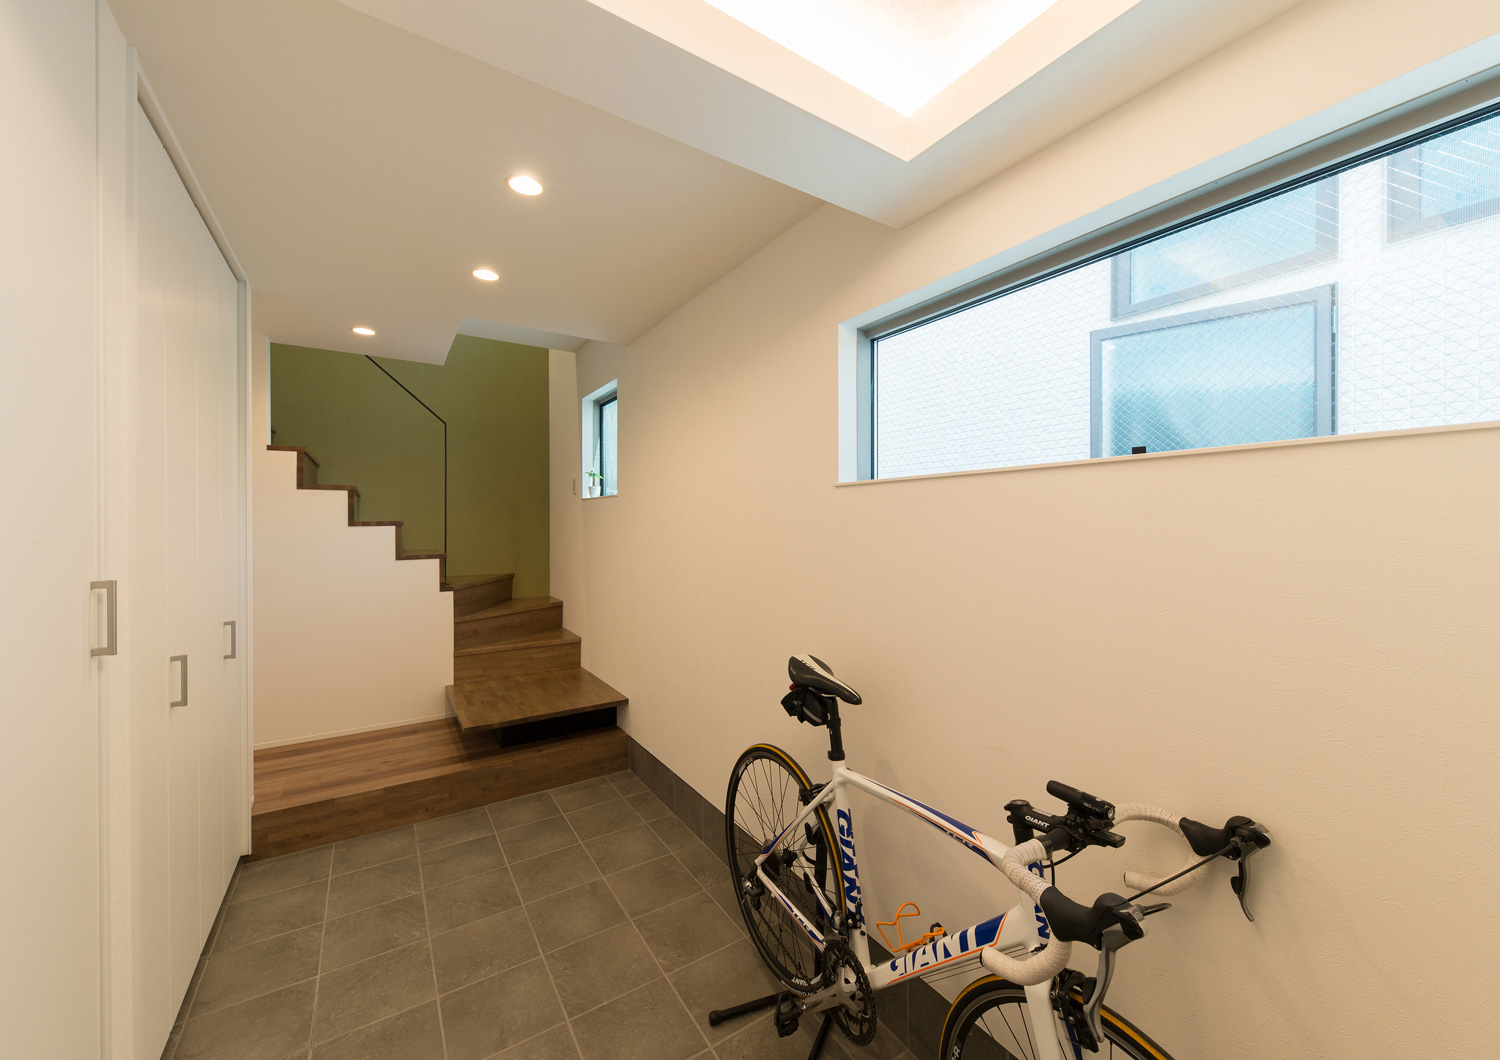 自転車を置くスペースがあるシンプルなタイルの玄関・デザイン住宅